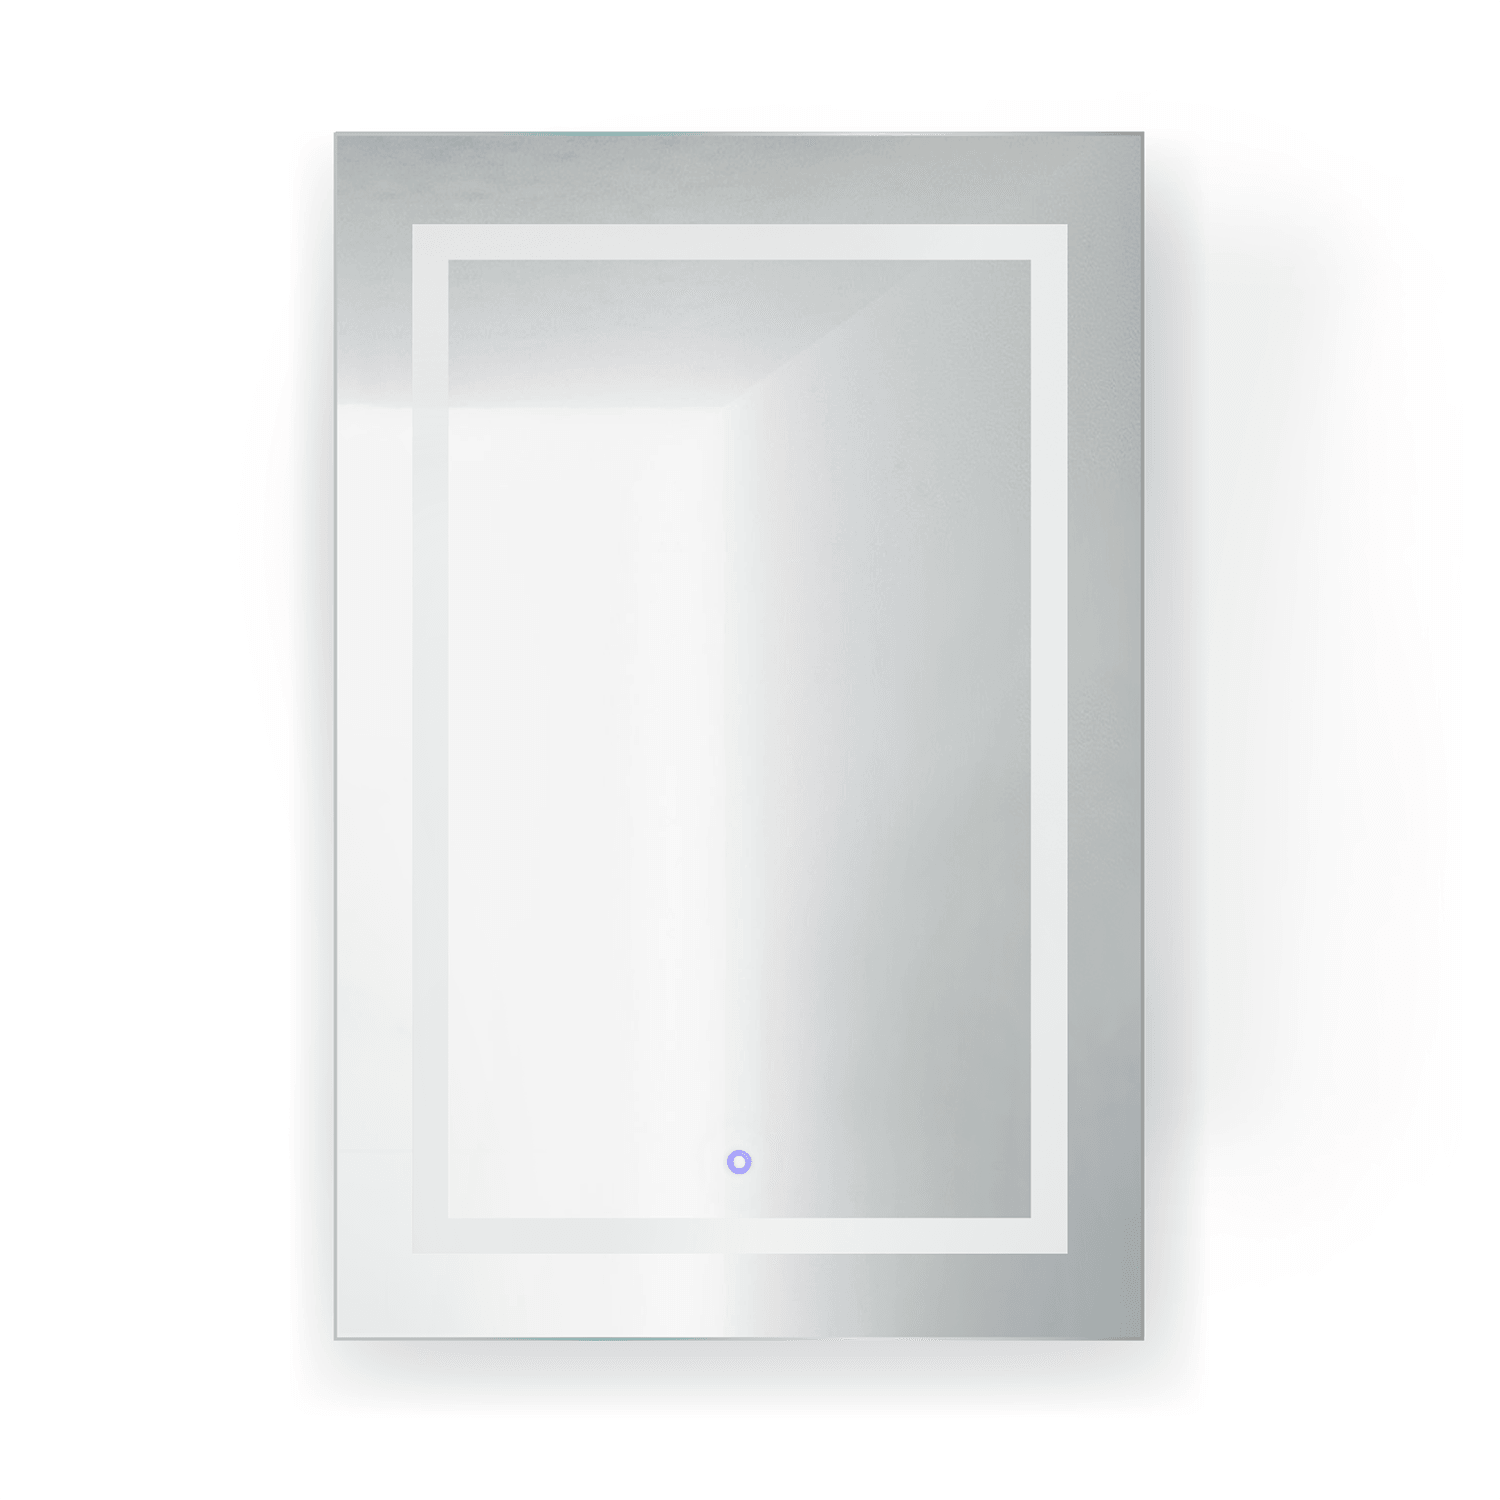 Krugg Svange 24″ X 36″ LED Medicine Cabinet w/Dimmer & Defogger